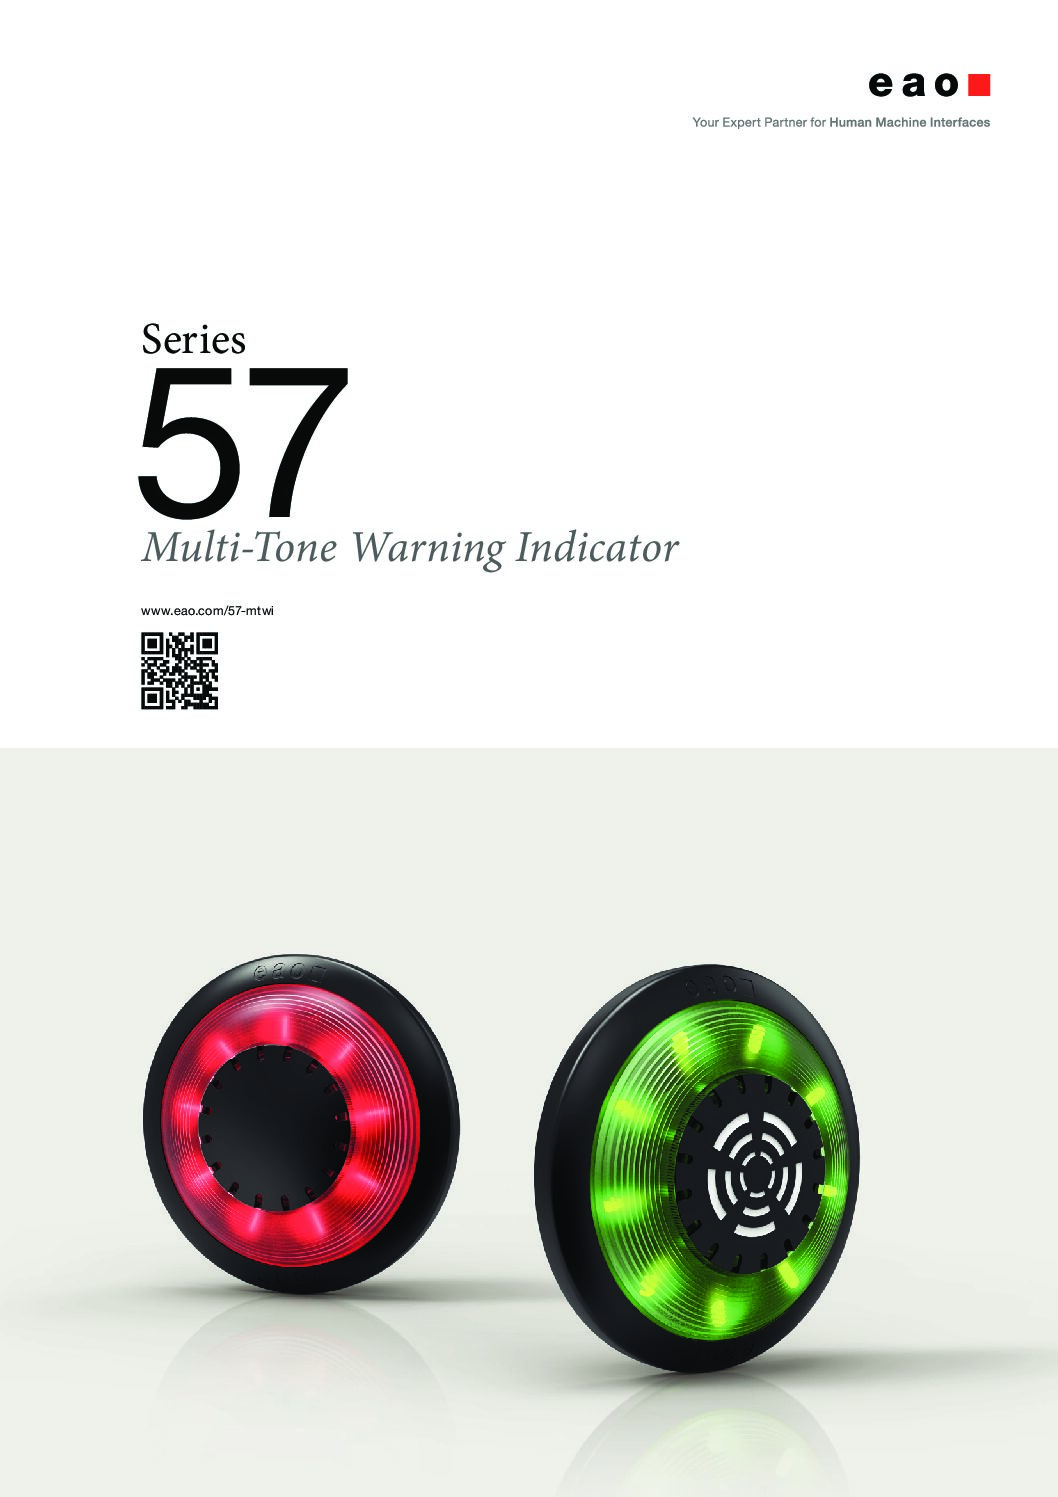 Series 57 – Multi-Tone Warning Indicator